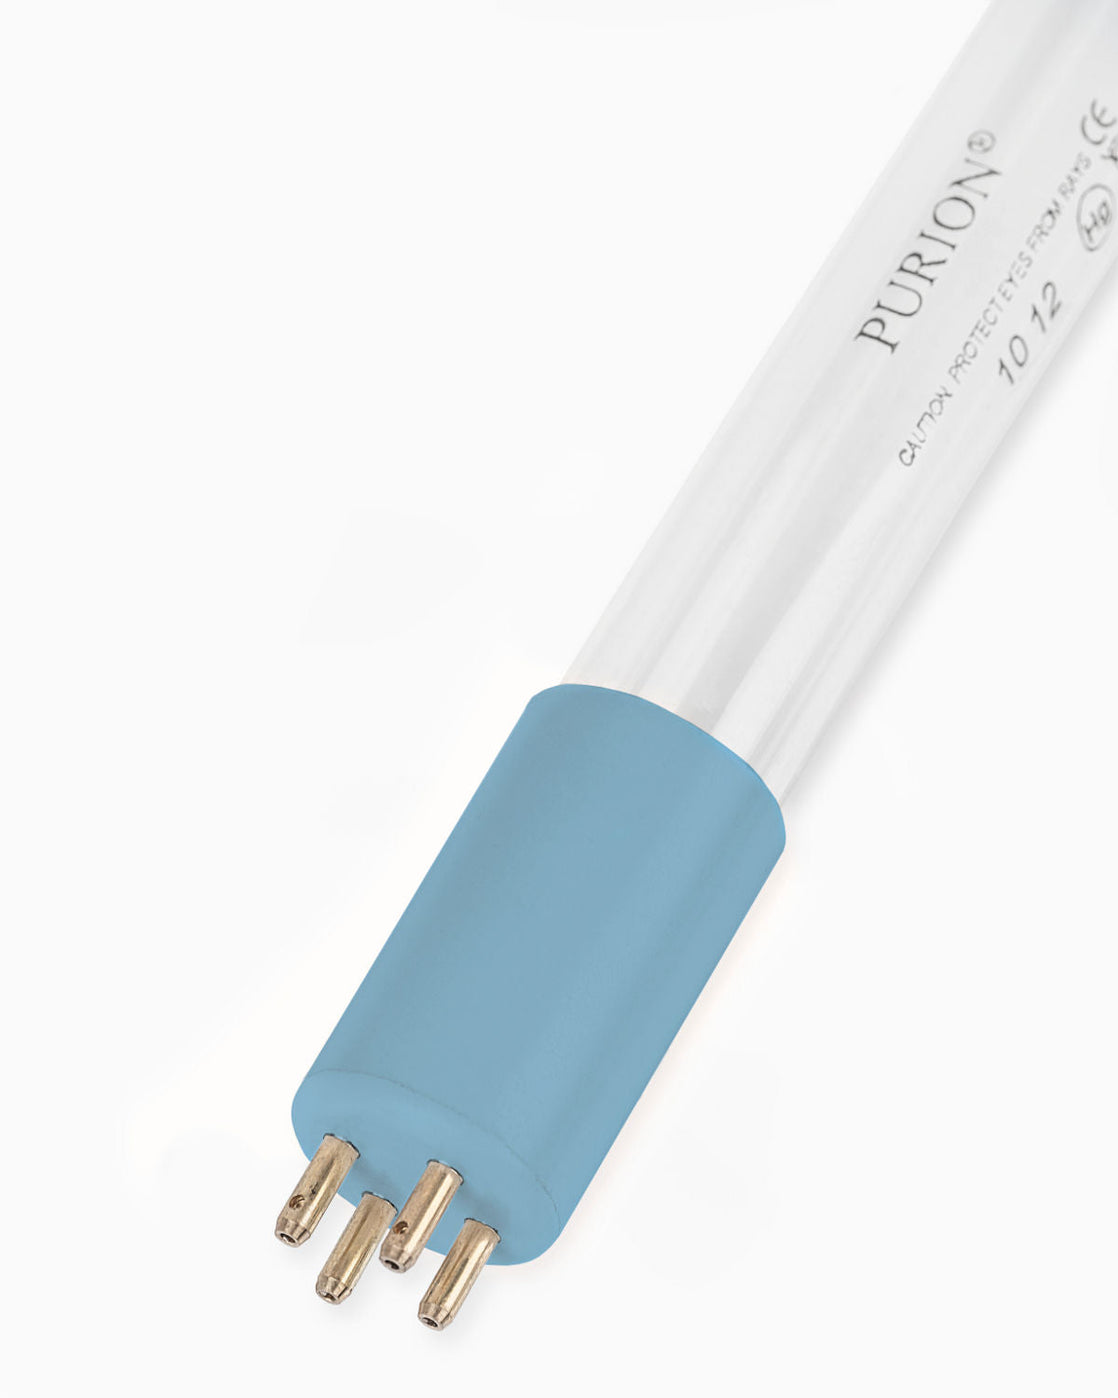 Eine blaue Lichtröhre auf weißem Hintergrund wirbt für den PURION IBC DN150 48W OTC SPL BS der UV Concept GmbH zur Sicherstellung der Trinkwasserqualität und Beseitigung von Verkeimungen.